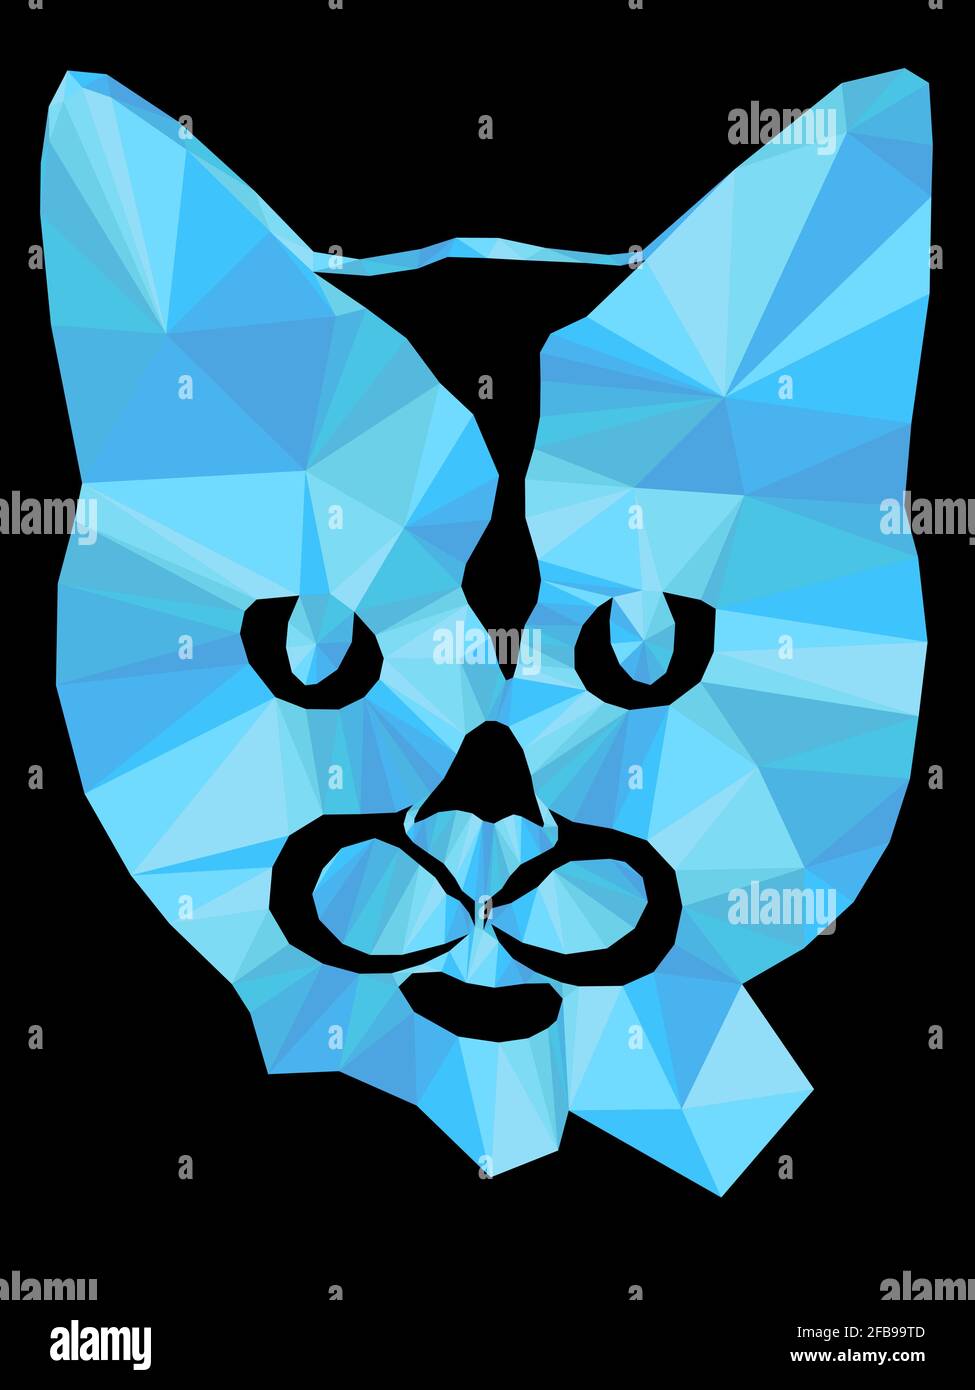 Mosaïque de chat sérieux dans des teintes bleues isolées sur fond noir, décoration sur verre Illustration de Vecteur